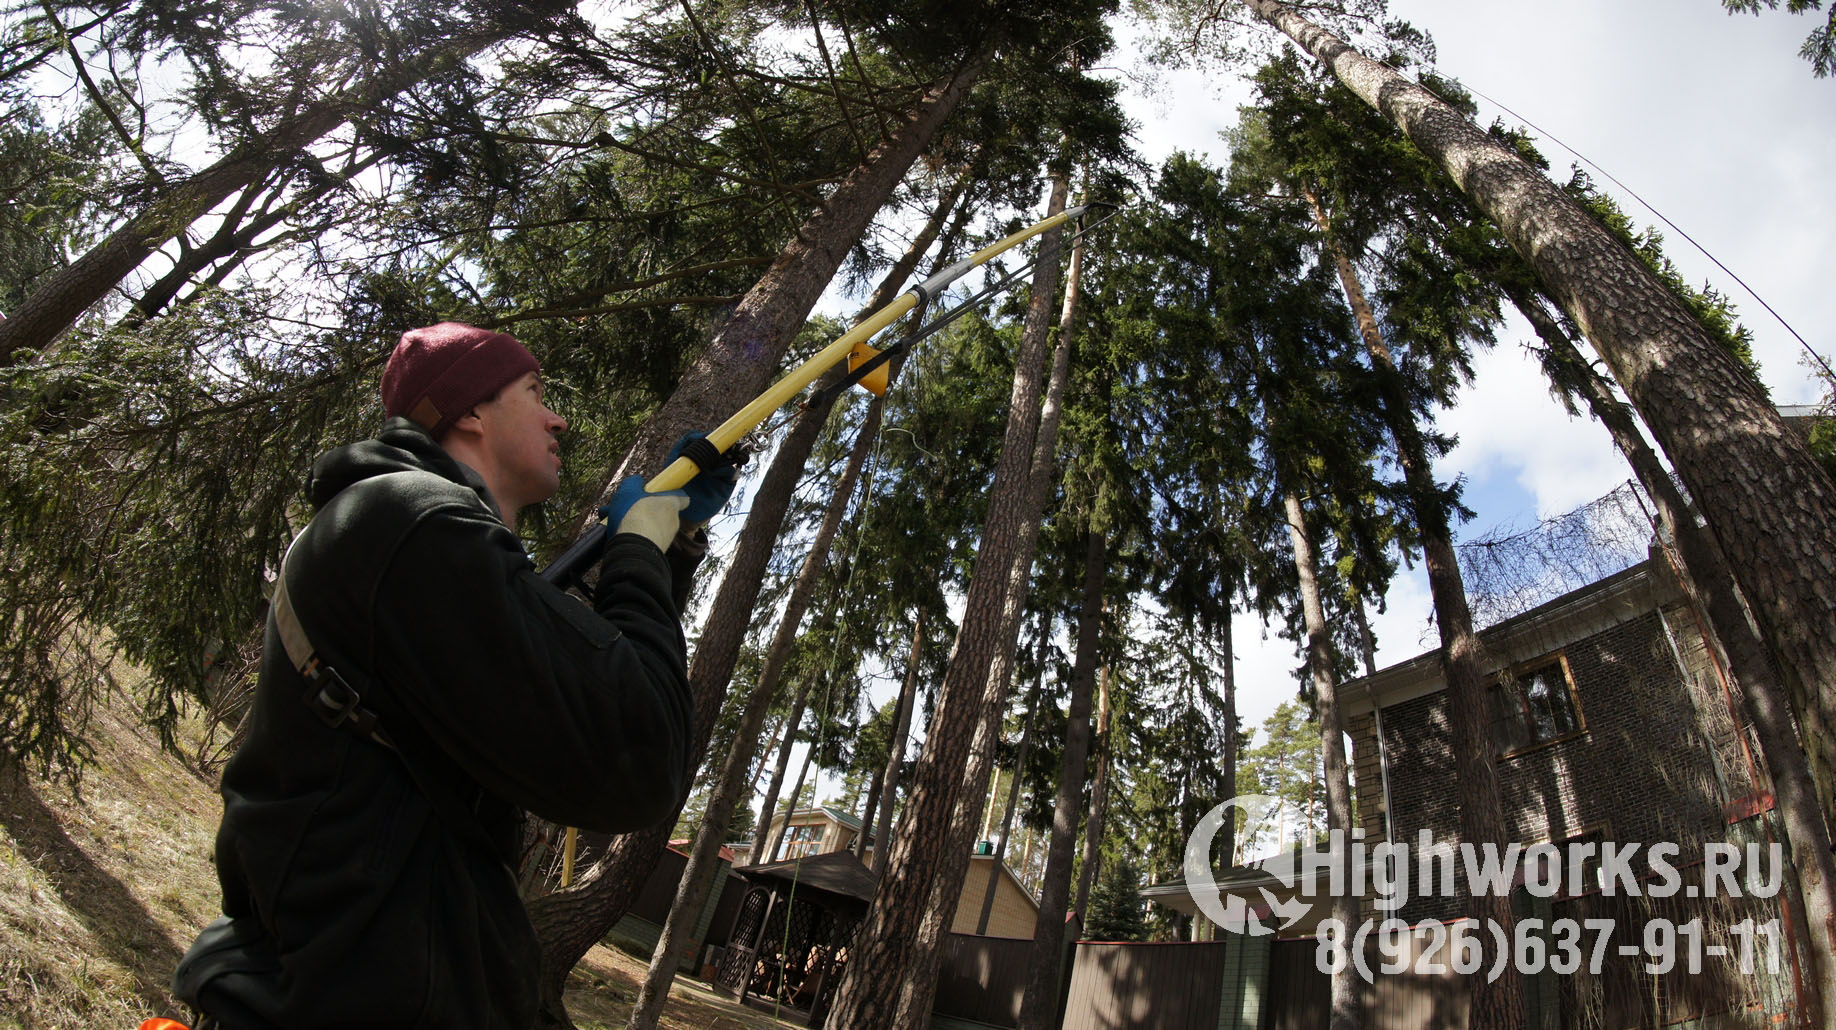 Укрепление и демонтаж деревьев промышленными альпинистами